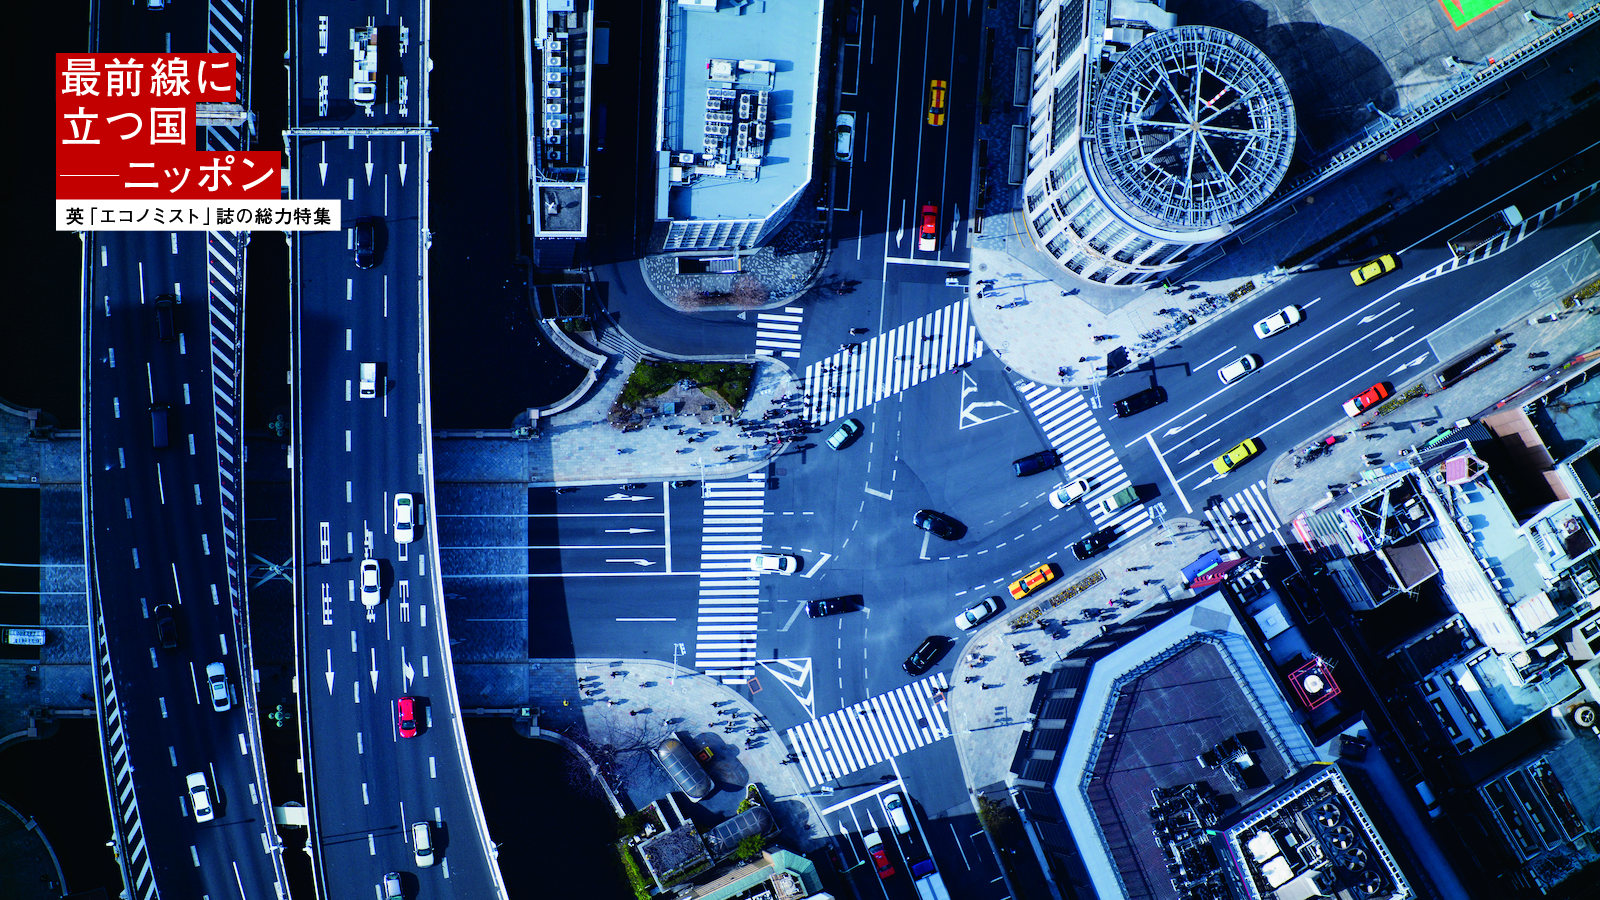 都市化が進行する世界において、“住みやすい巨大都市”東京は「学ぶべき先例」だ！